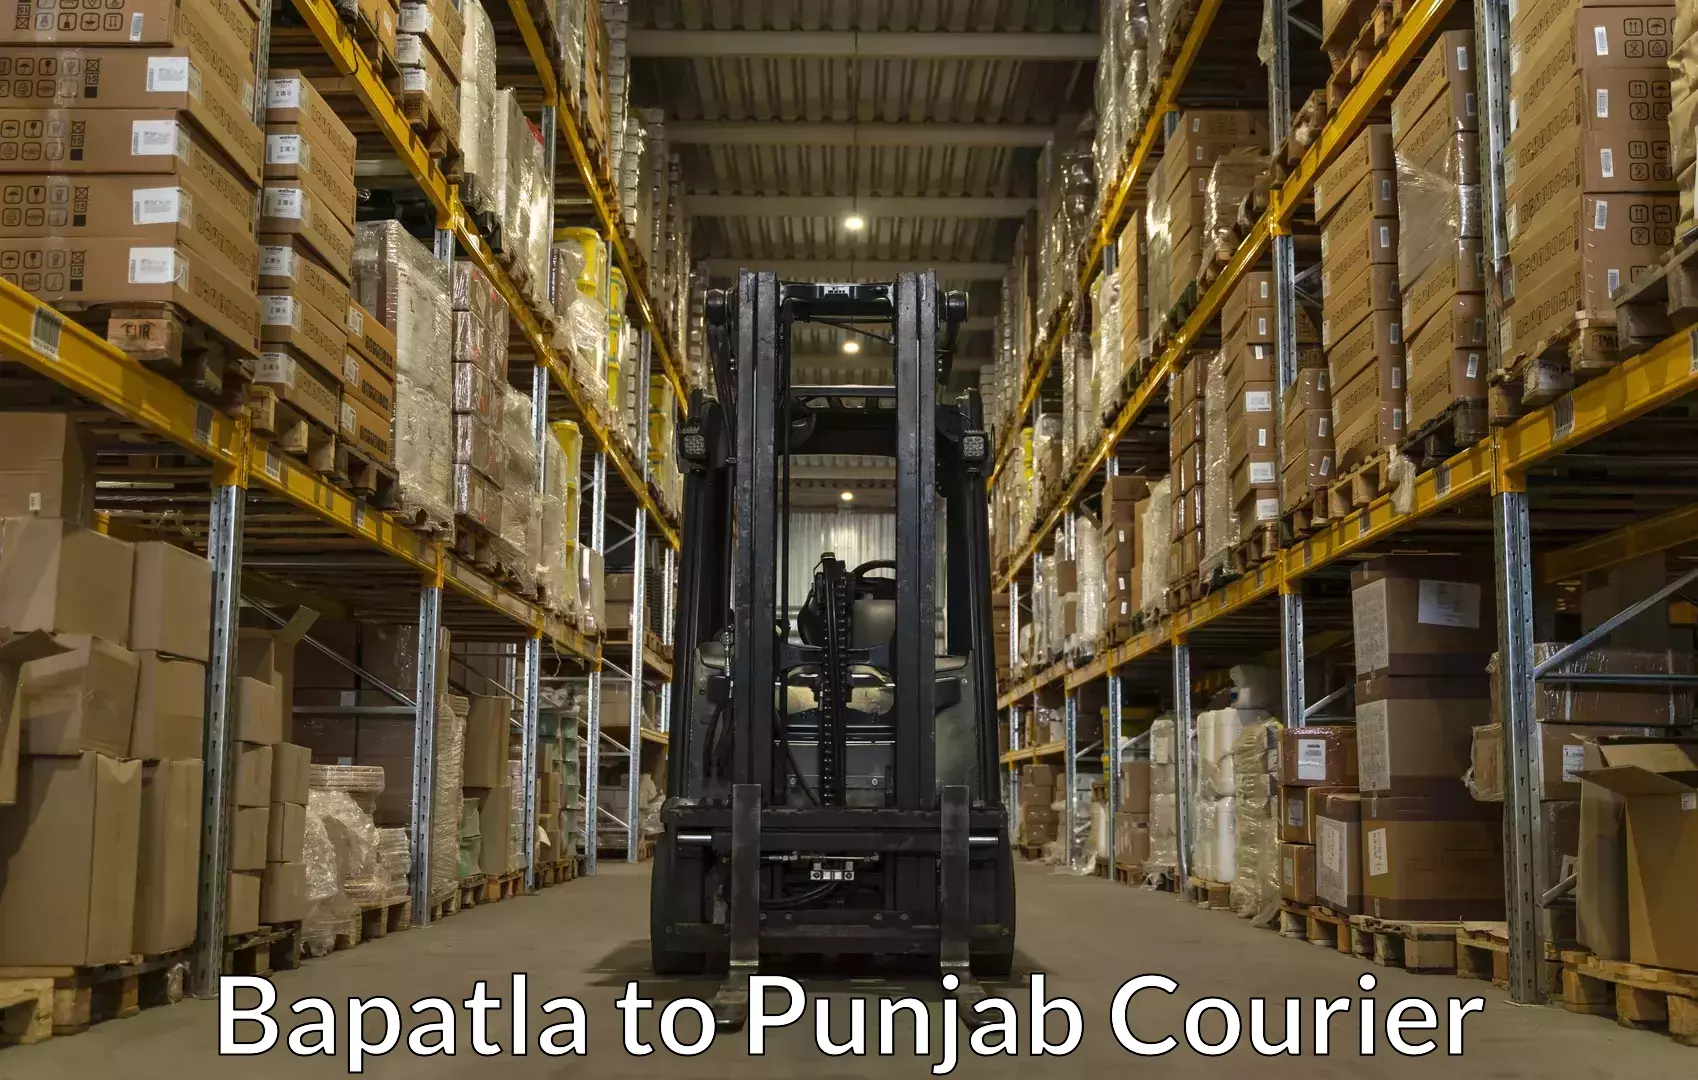 Trusted moving company Bapatla to Khanna